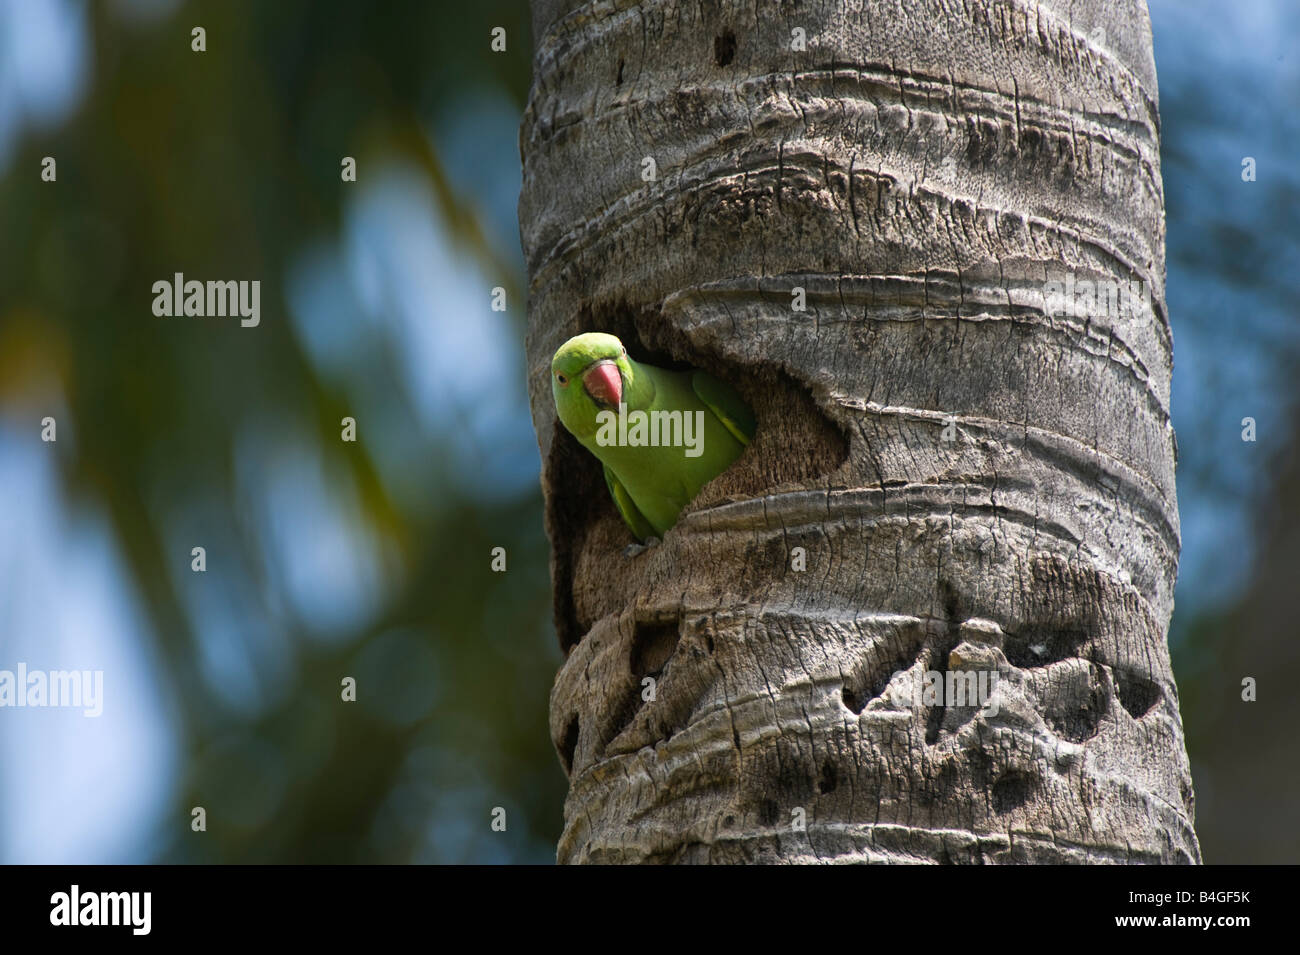 Geflohen waren. Stieg beringt Sittich / Halsbandsittich Blick aus seinem Nest Loch in den Stamm einer Kokospalme.  Andhra Pradesh, Indien Stockfoto